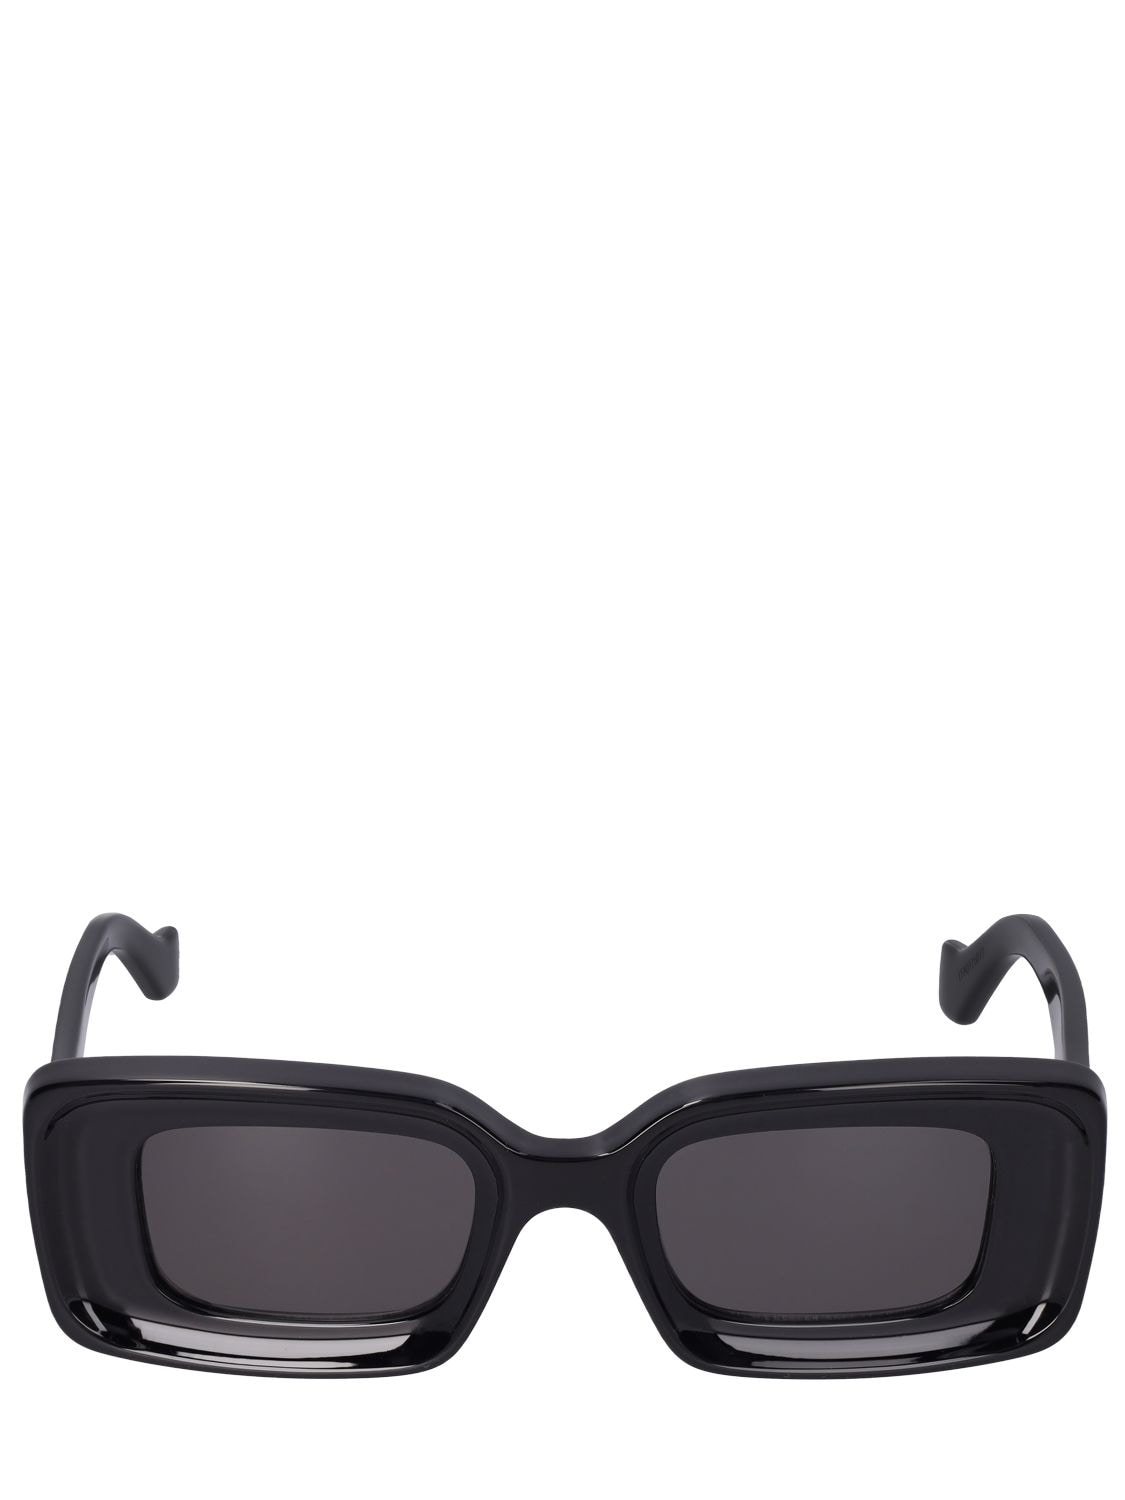 Image of Anagram Squared Acetate Sunglasses